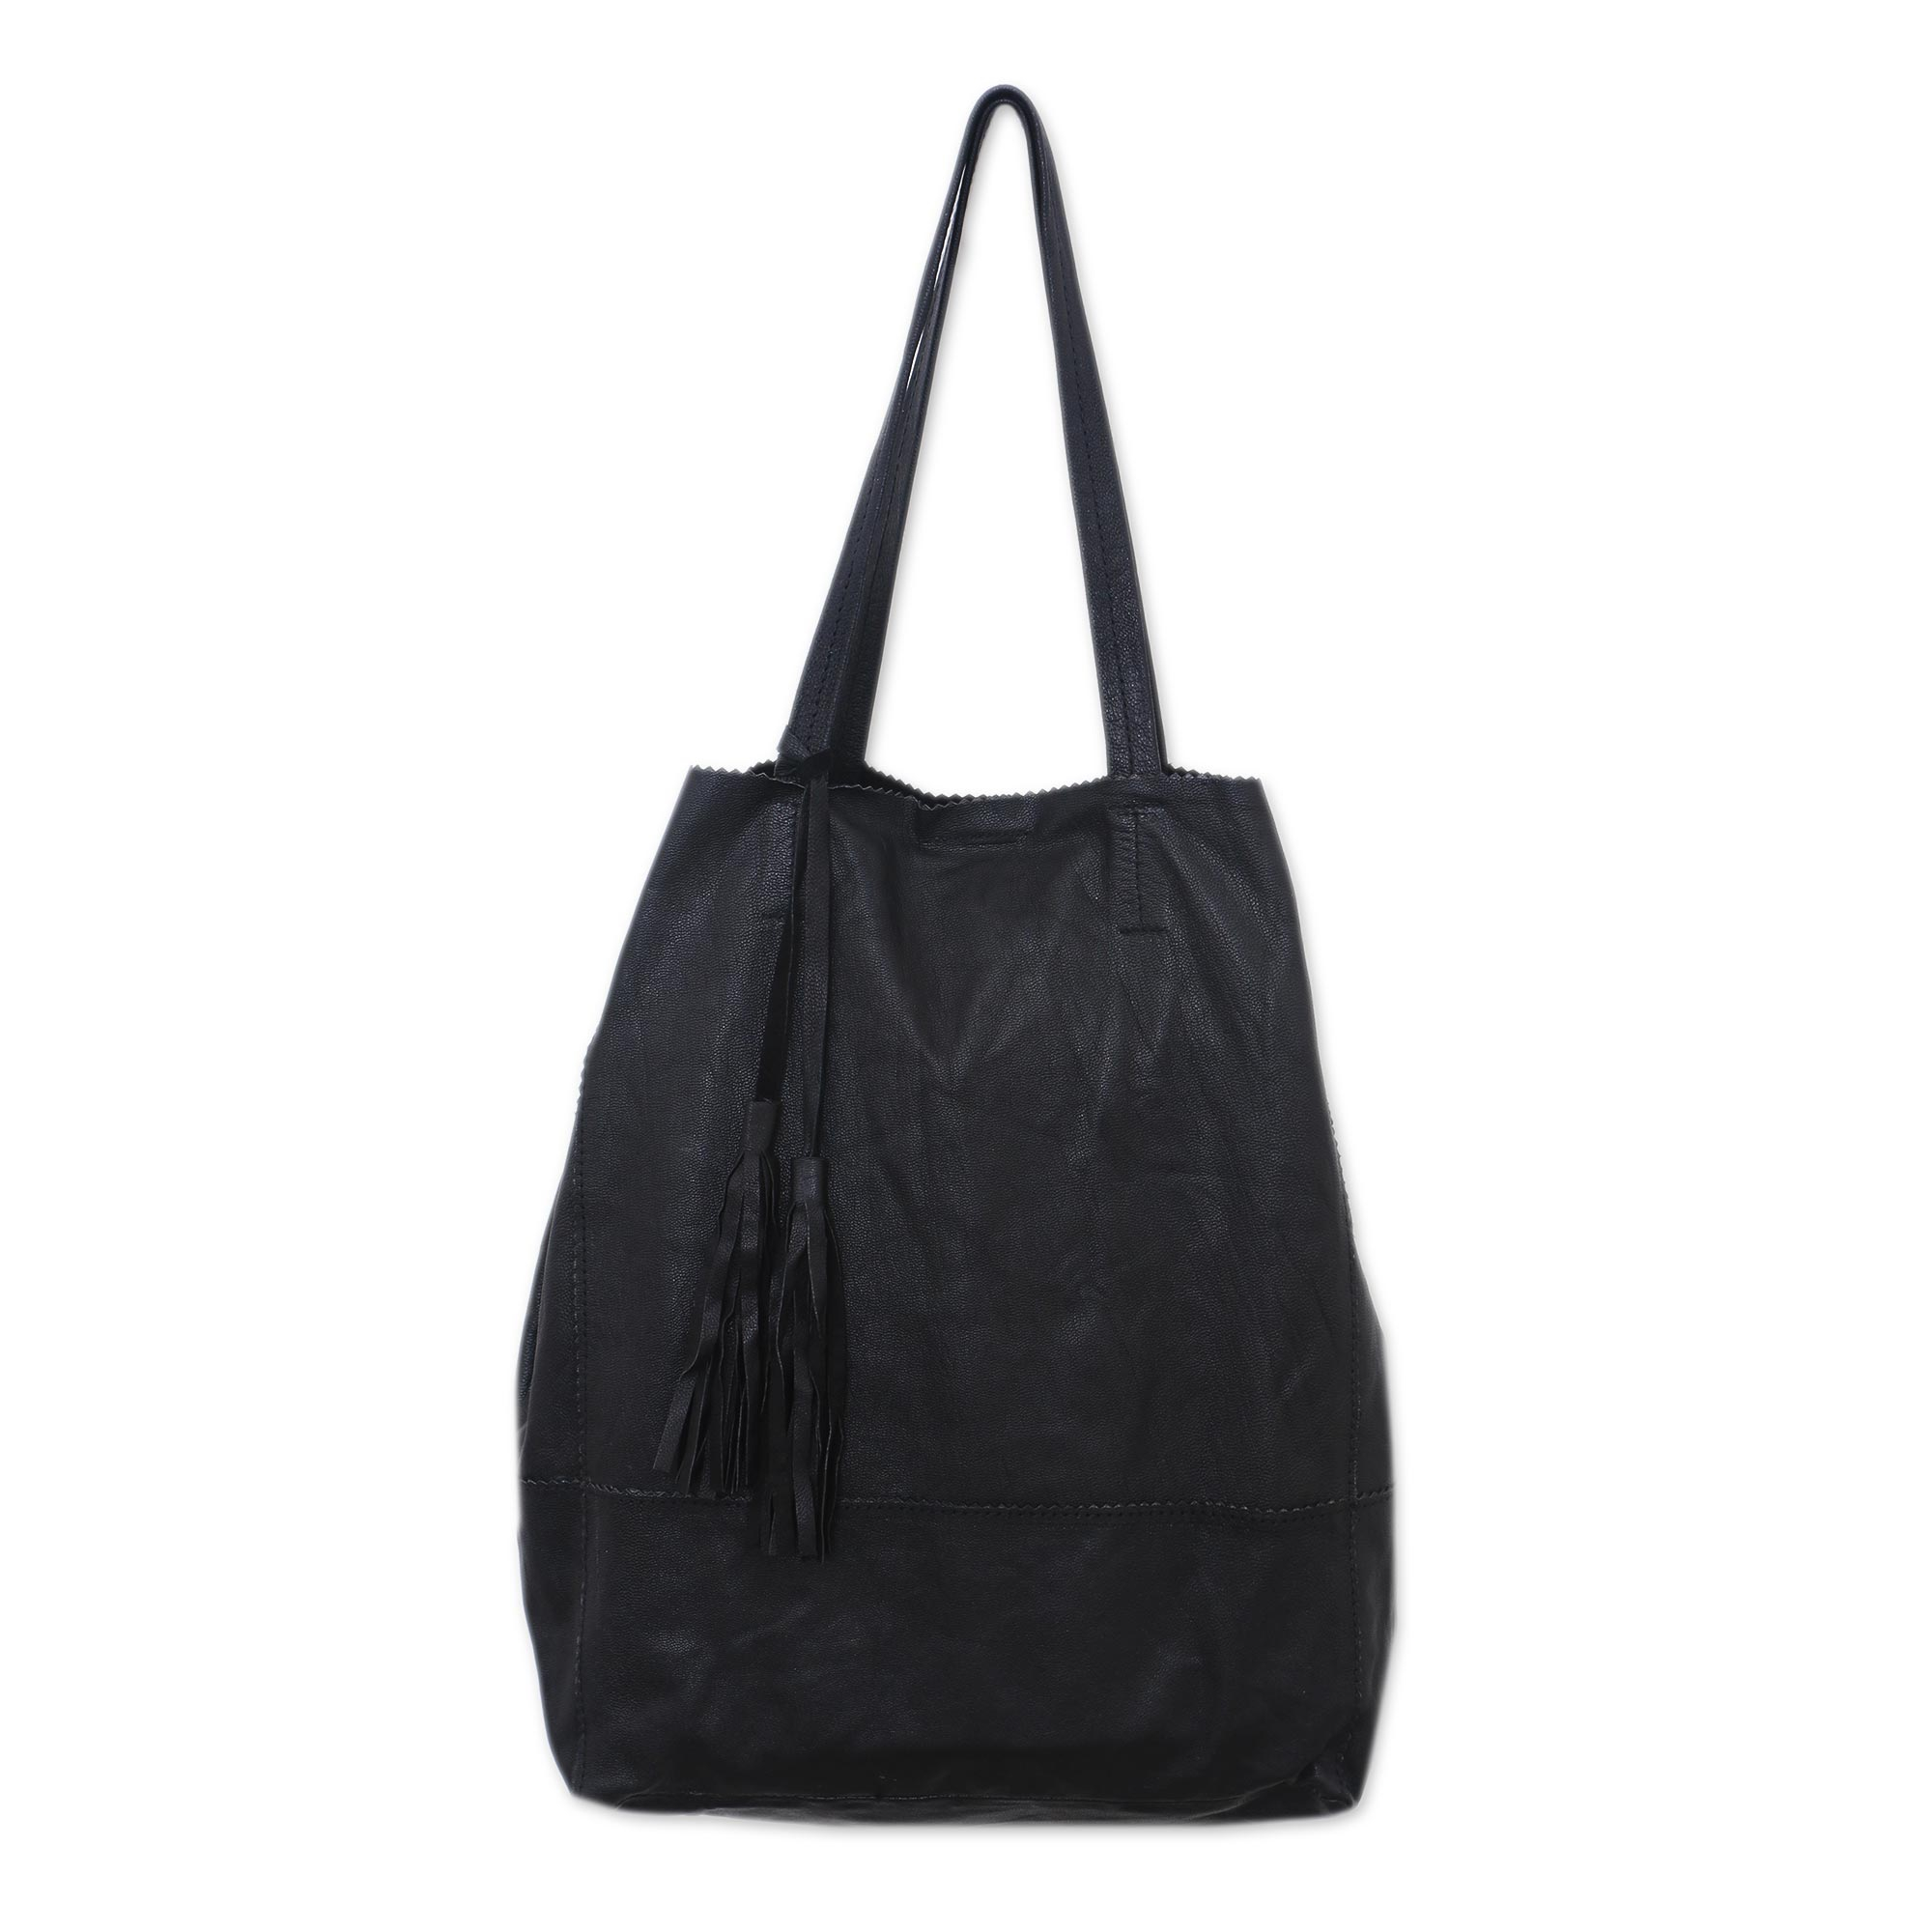 Handmade Leather Tote Handbag in Black from Bali - Jogja Shopper in ...